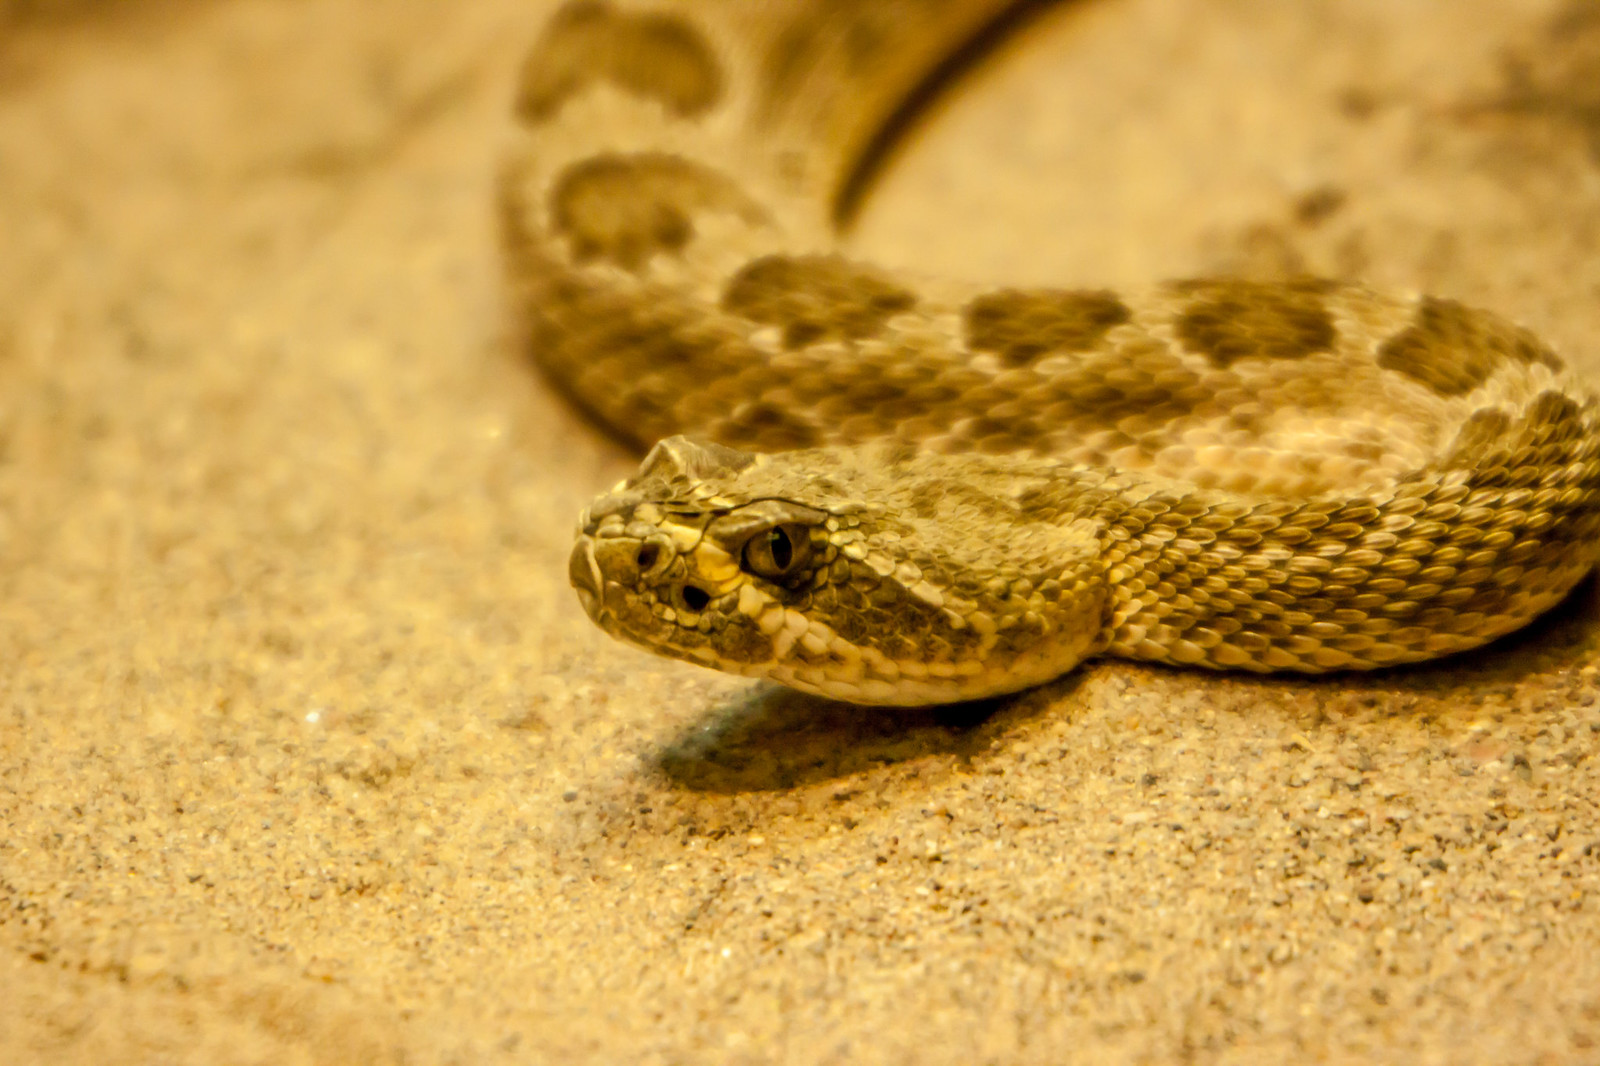 Ilha De Queimada Grande – Deadly Island Full With Snakes